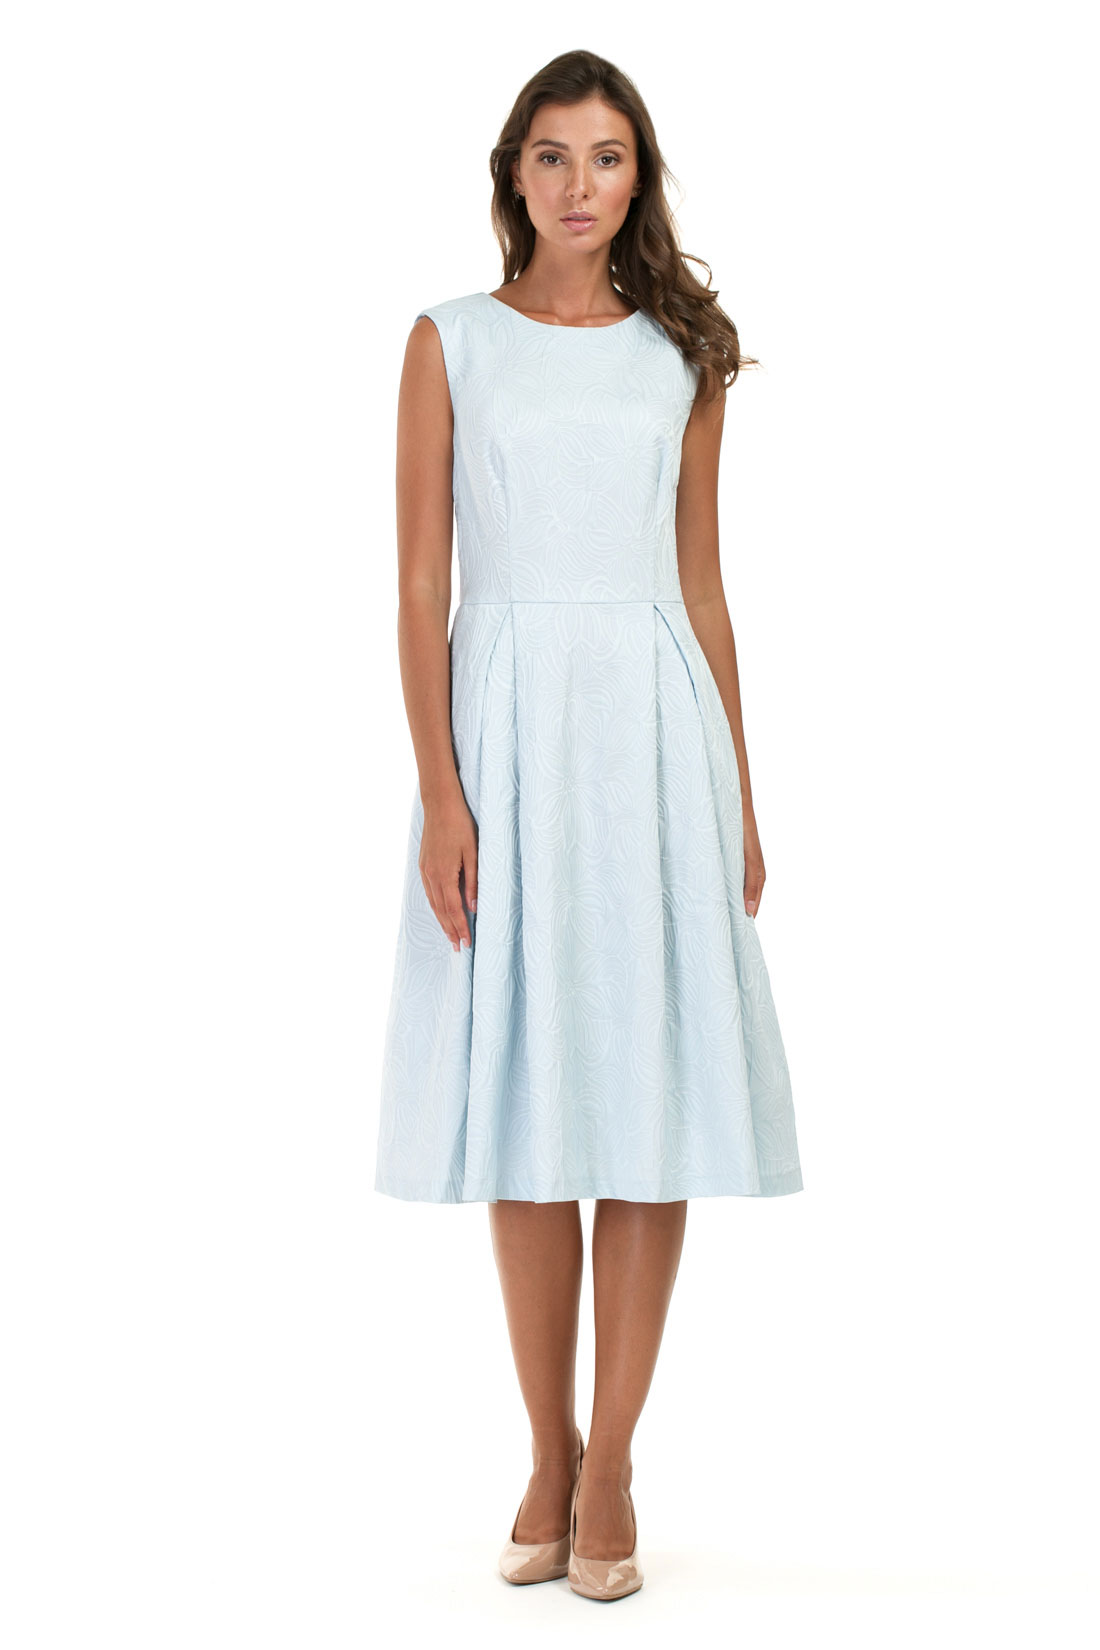 Платье из жаккардового материала (арт. baon B457063), размер XS, цвет белый Платье из жаккардового материала (арт. baon B457063) - фото 5